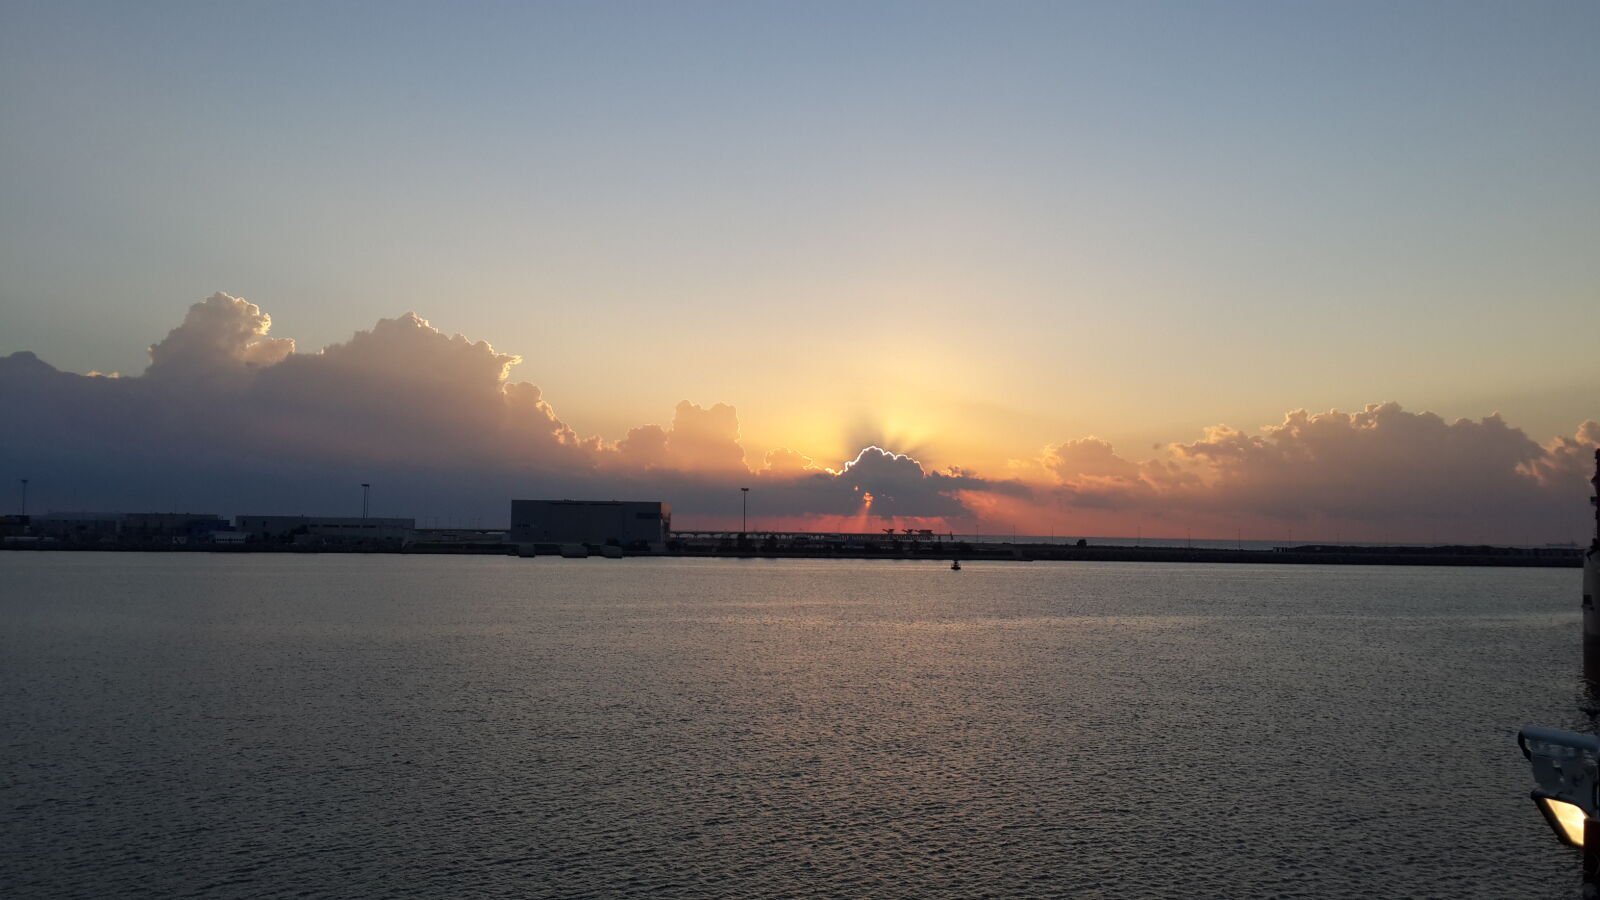 Samsung Galaxy S4 sample photo. Cloud, sea, ships, sun photography